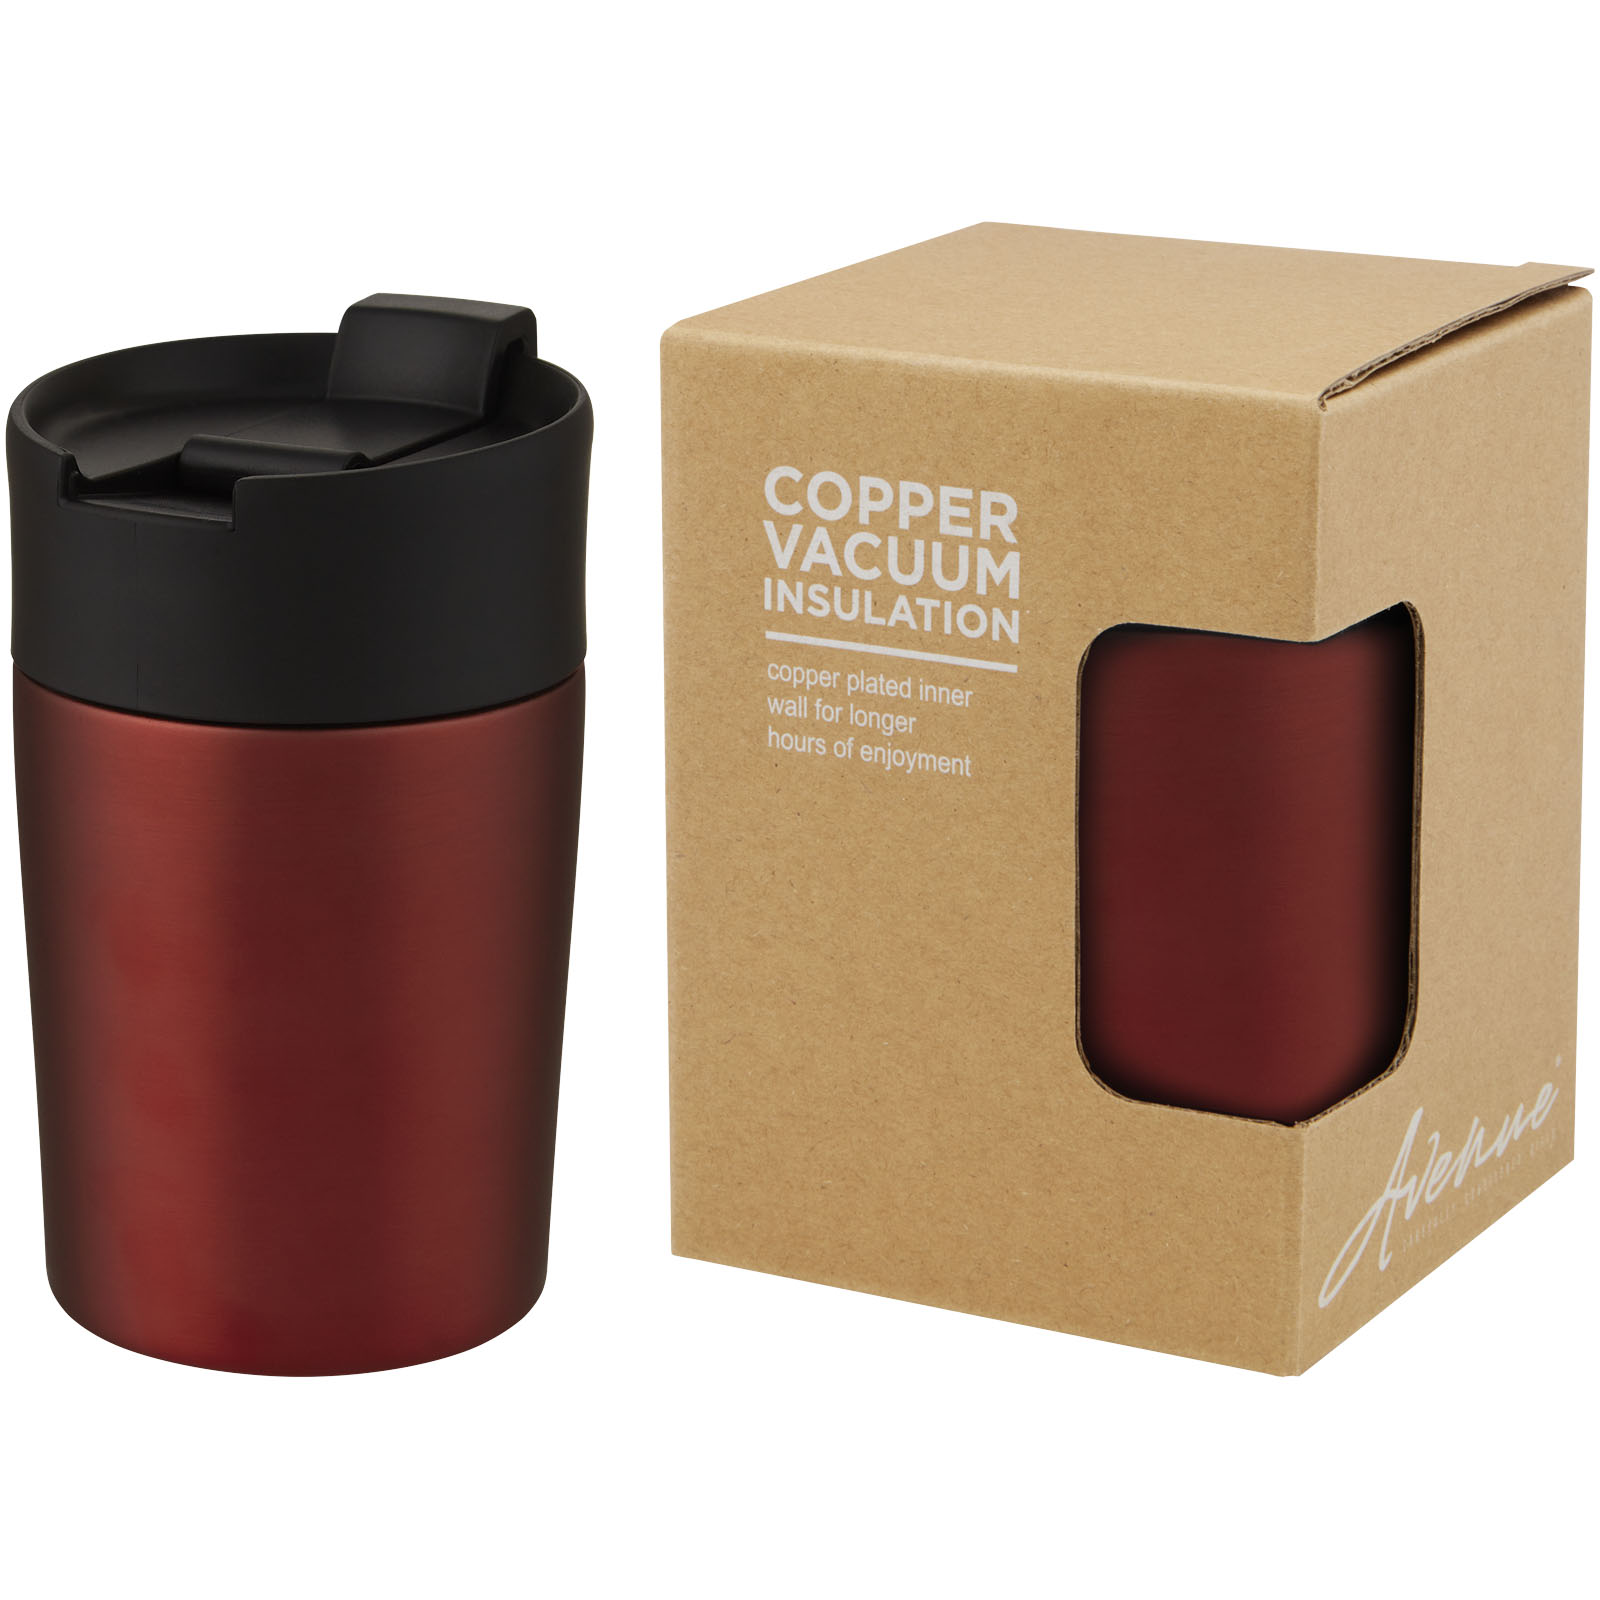 Insulated mugs - Jetta 180 ml copper vacuum insulated tumbler